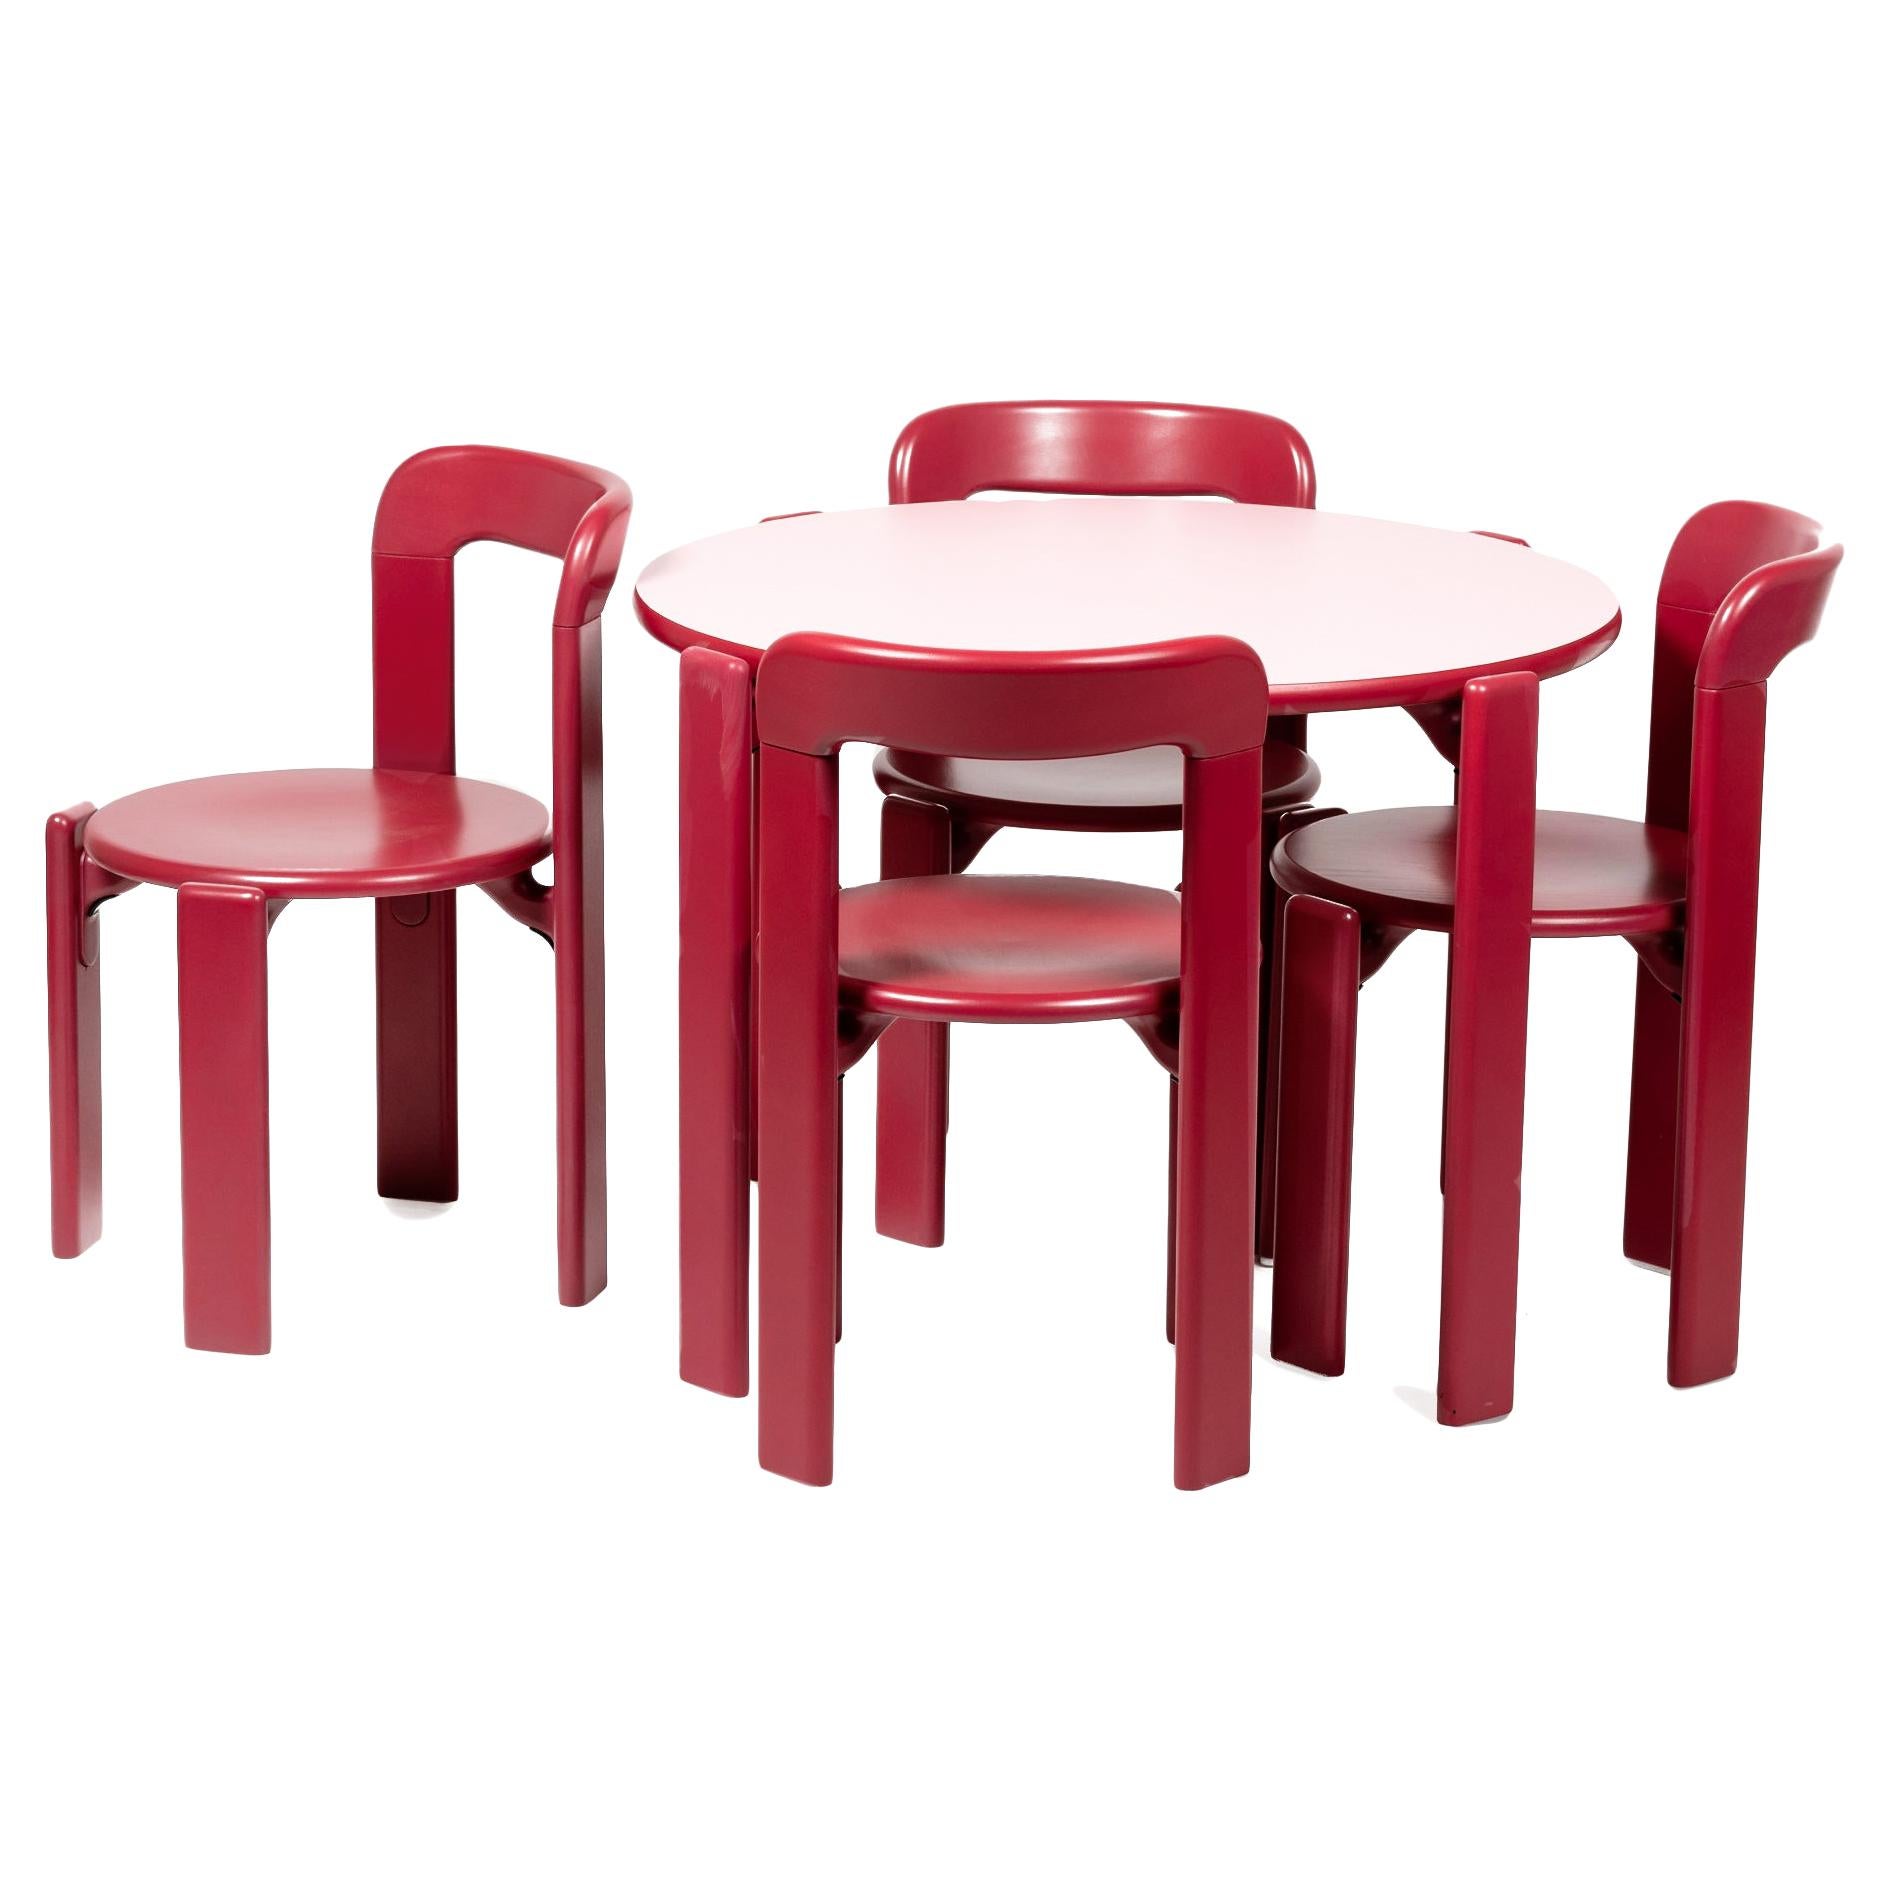 Ensemble Dietiker Rey Junior, table et chaises pour enfants en rose, conçu par Bruno Rey